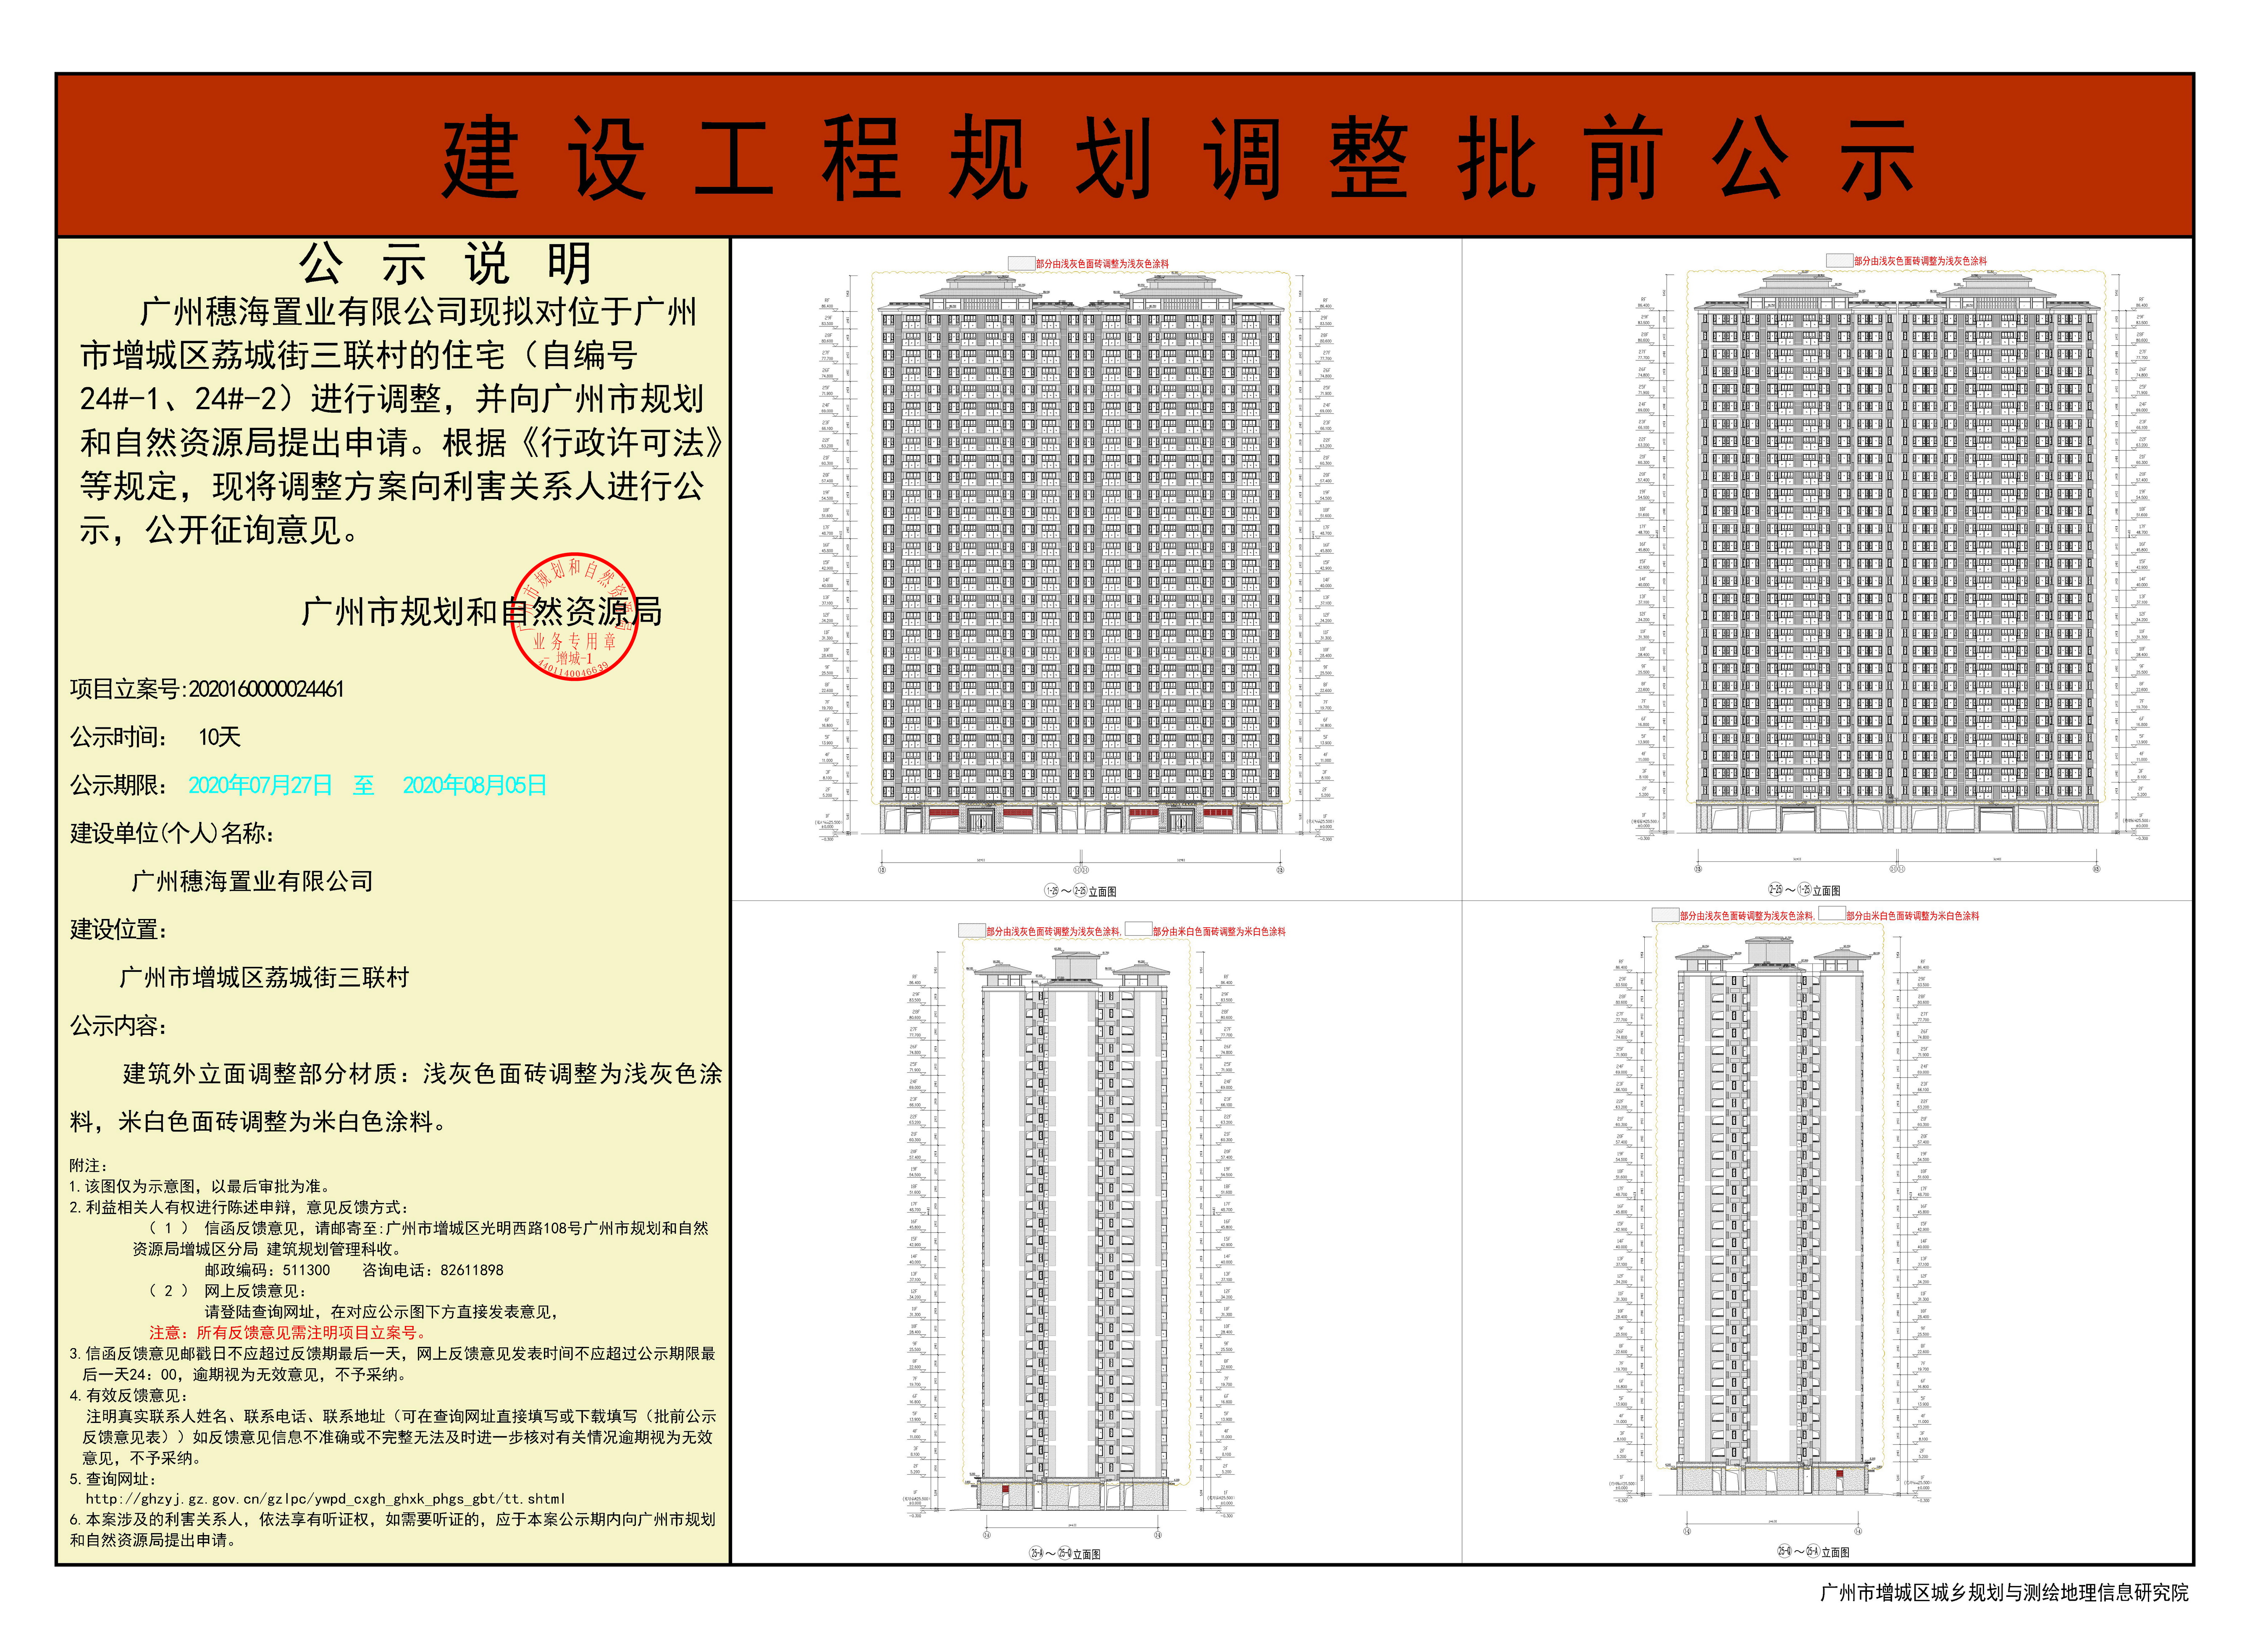 广州穗海置业有限公司 住宅（自编号24#-1、24#-2） 调整建设工程规划许可证 批前公示.jpg